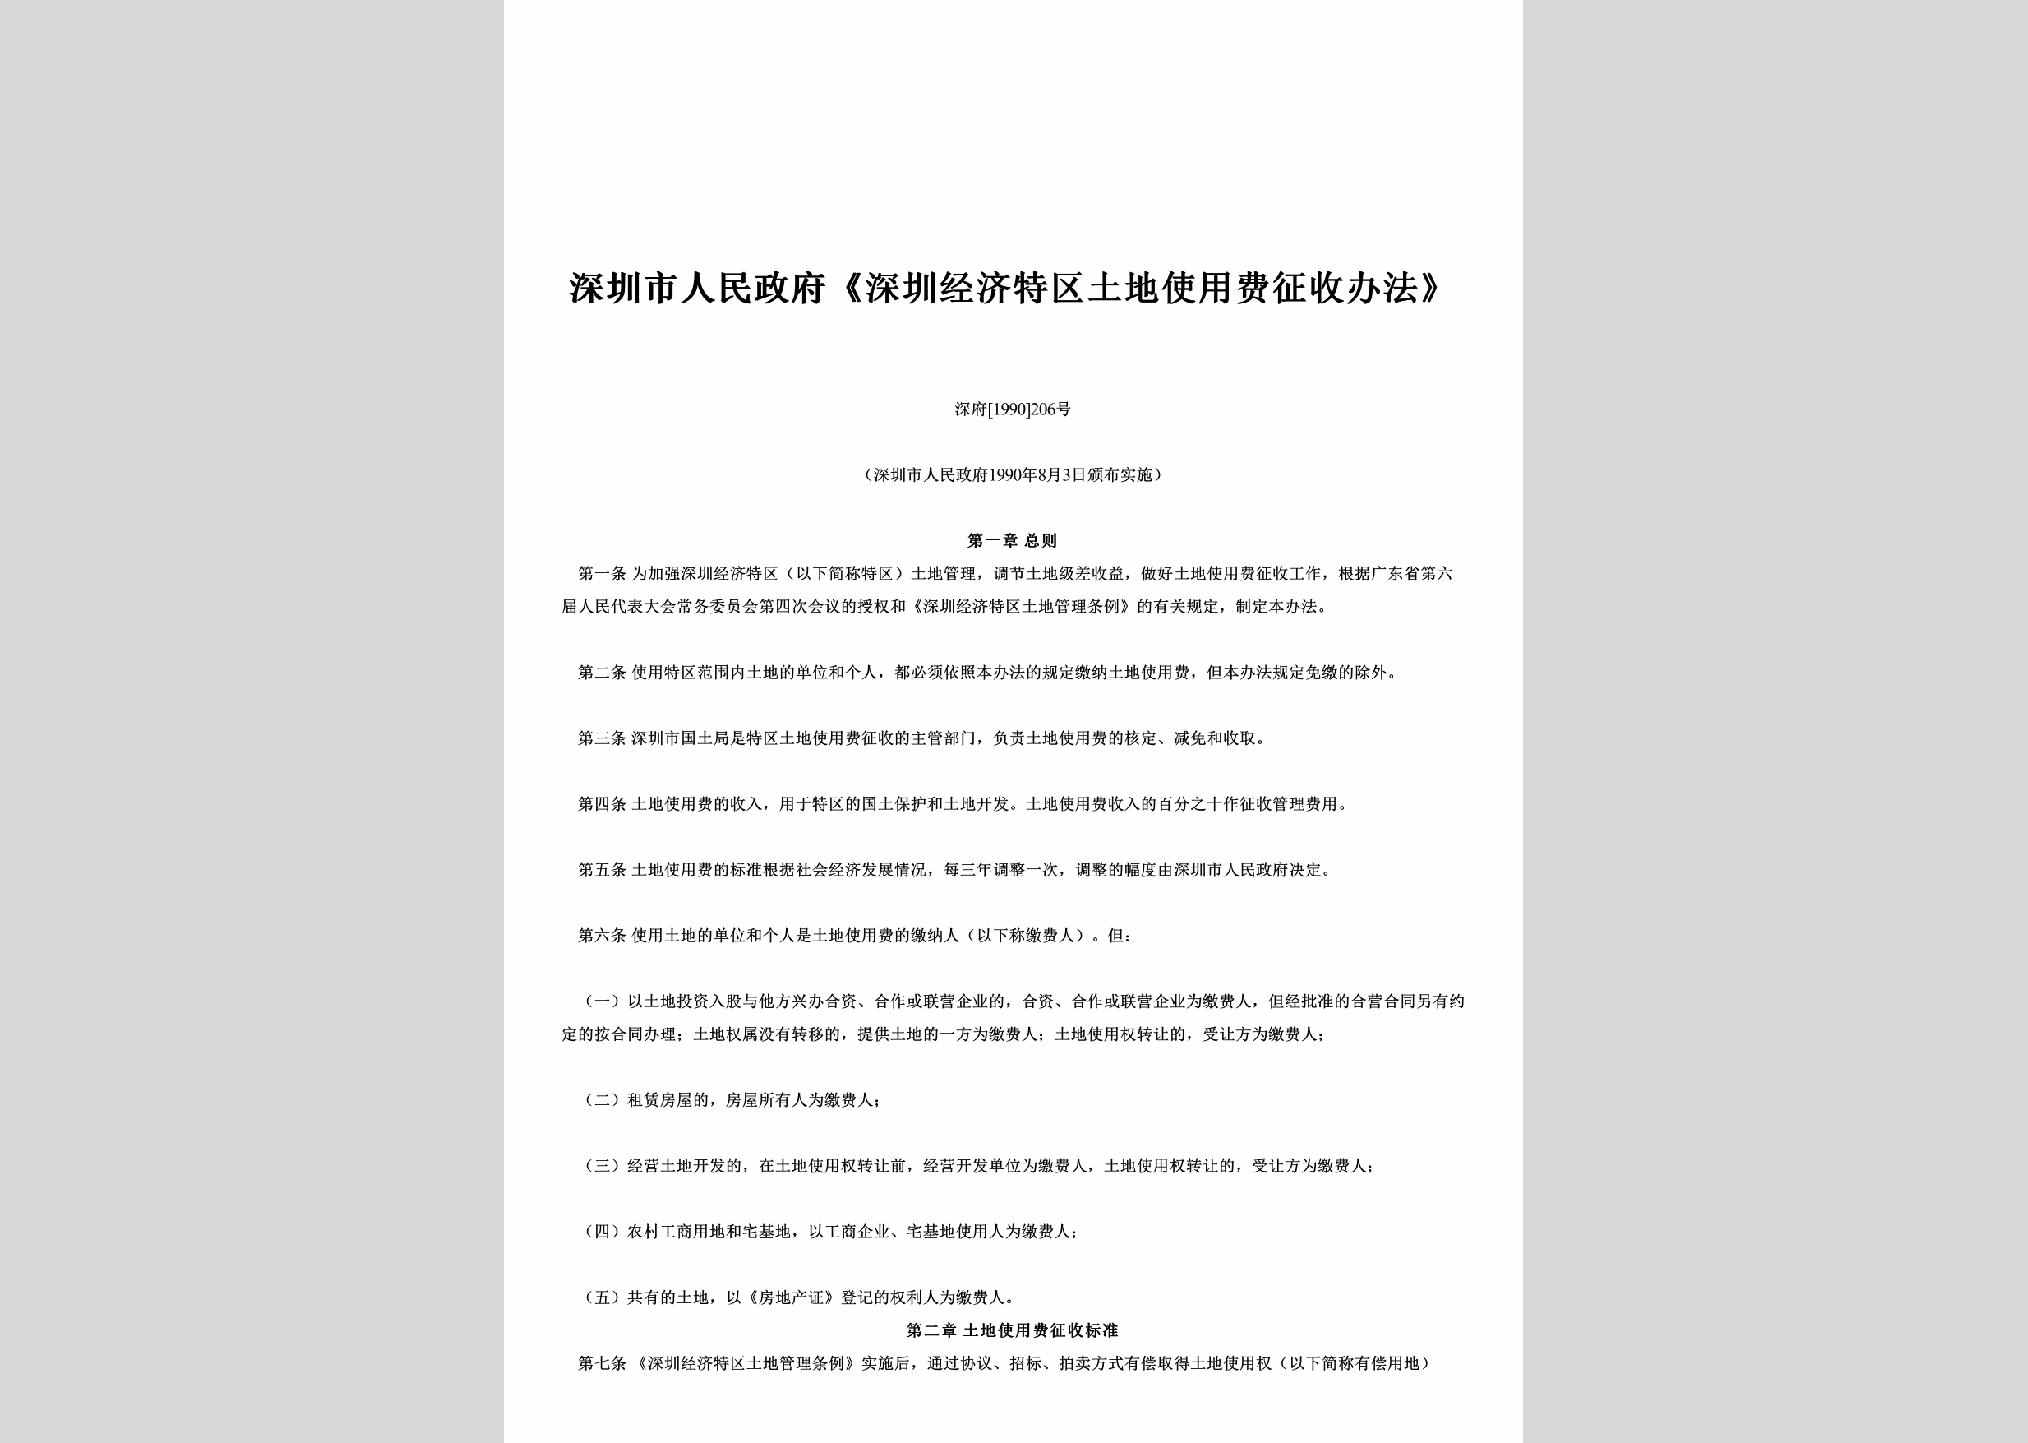 深府[1990]206号：《深圳经济特区土地使用费征收办法》